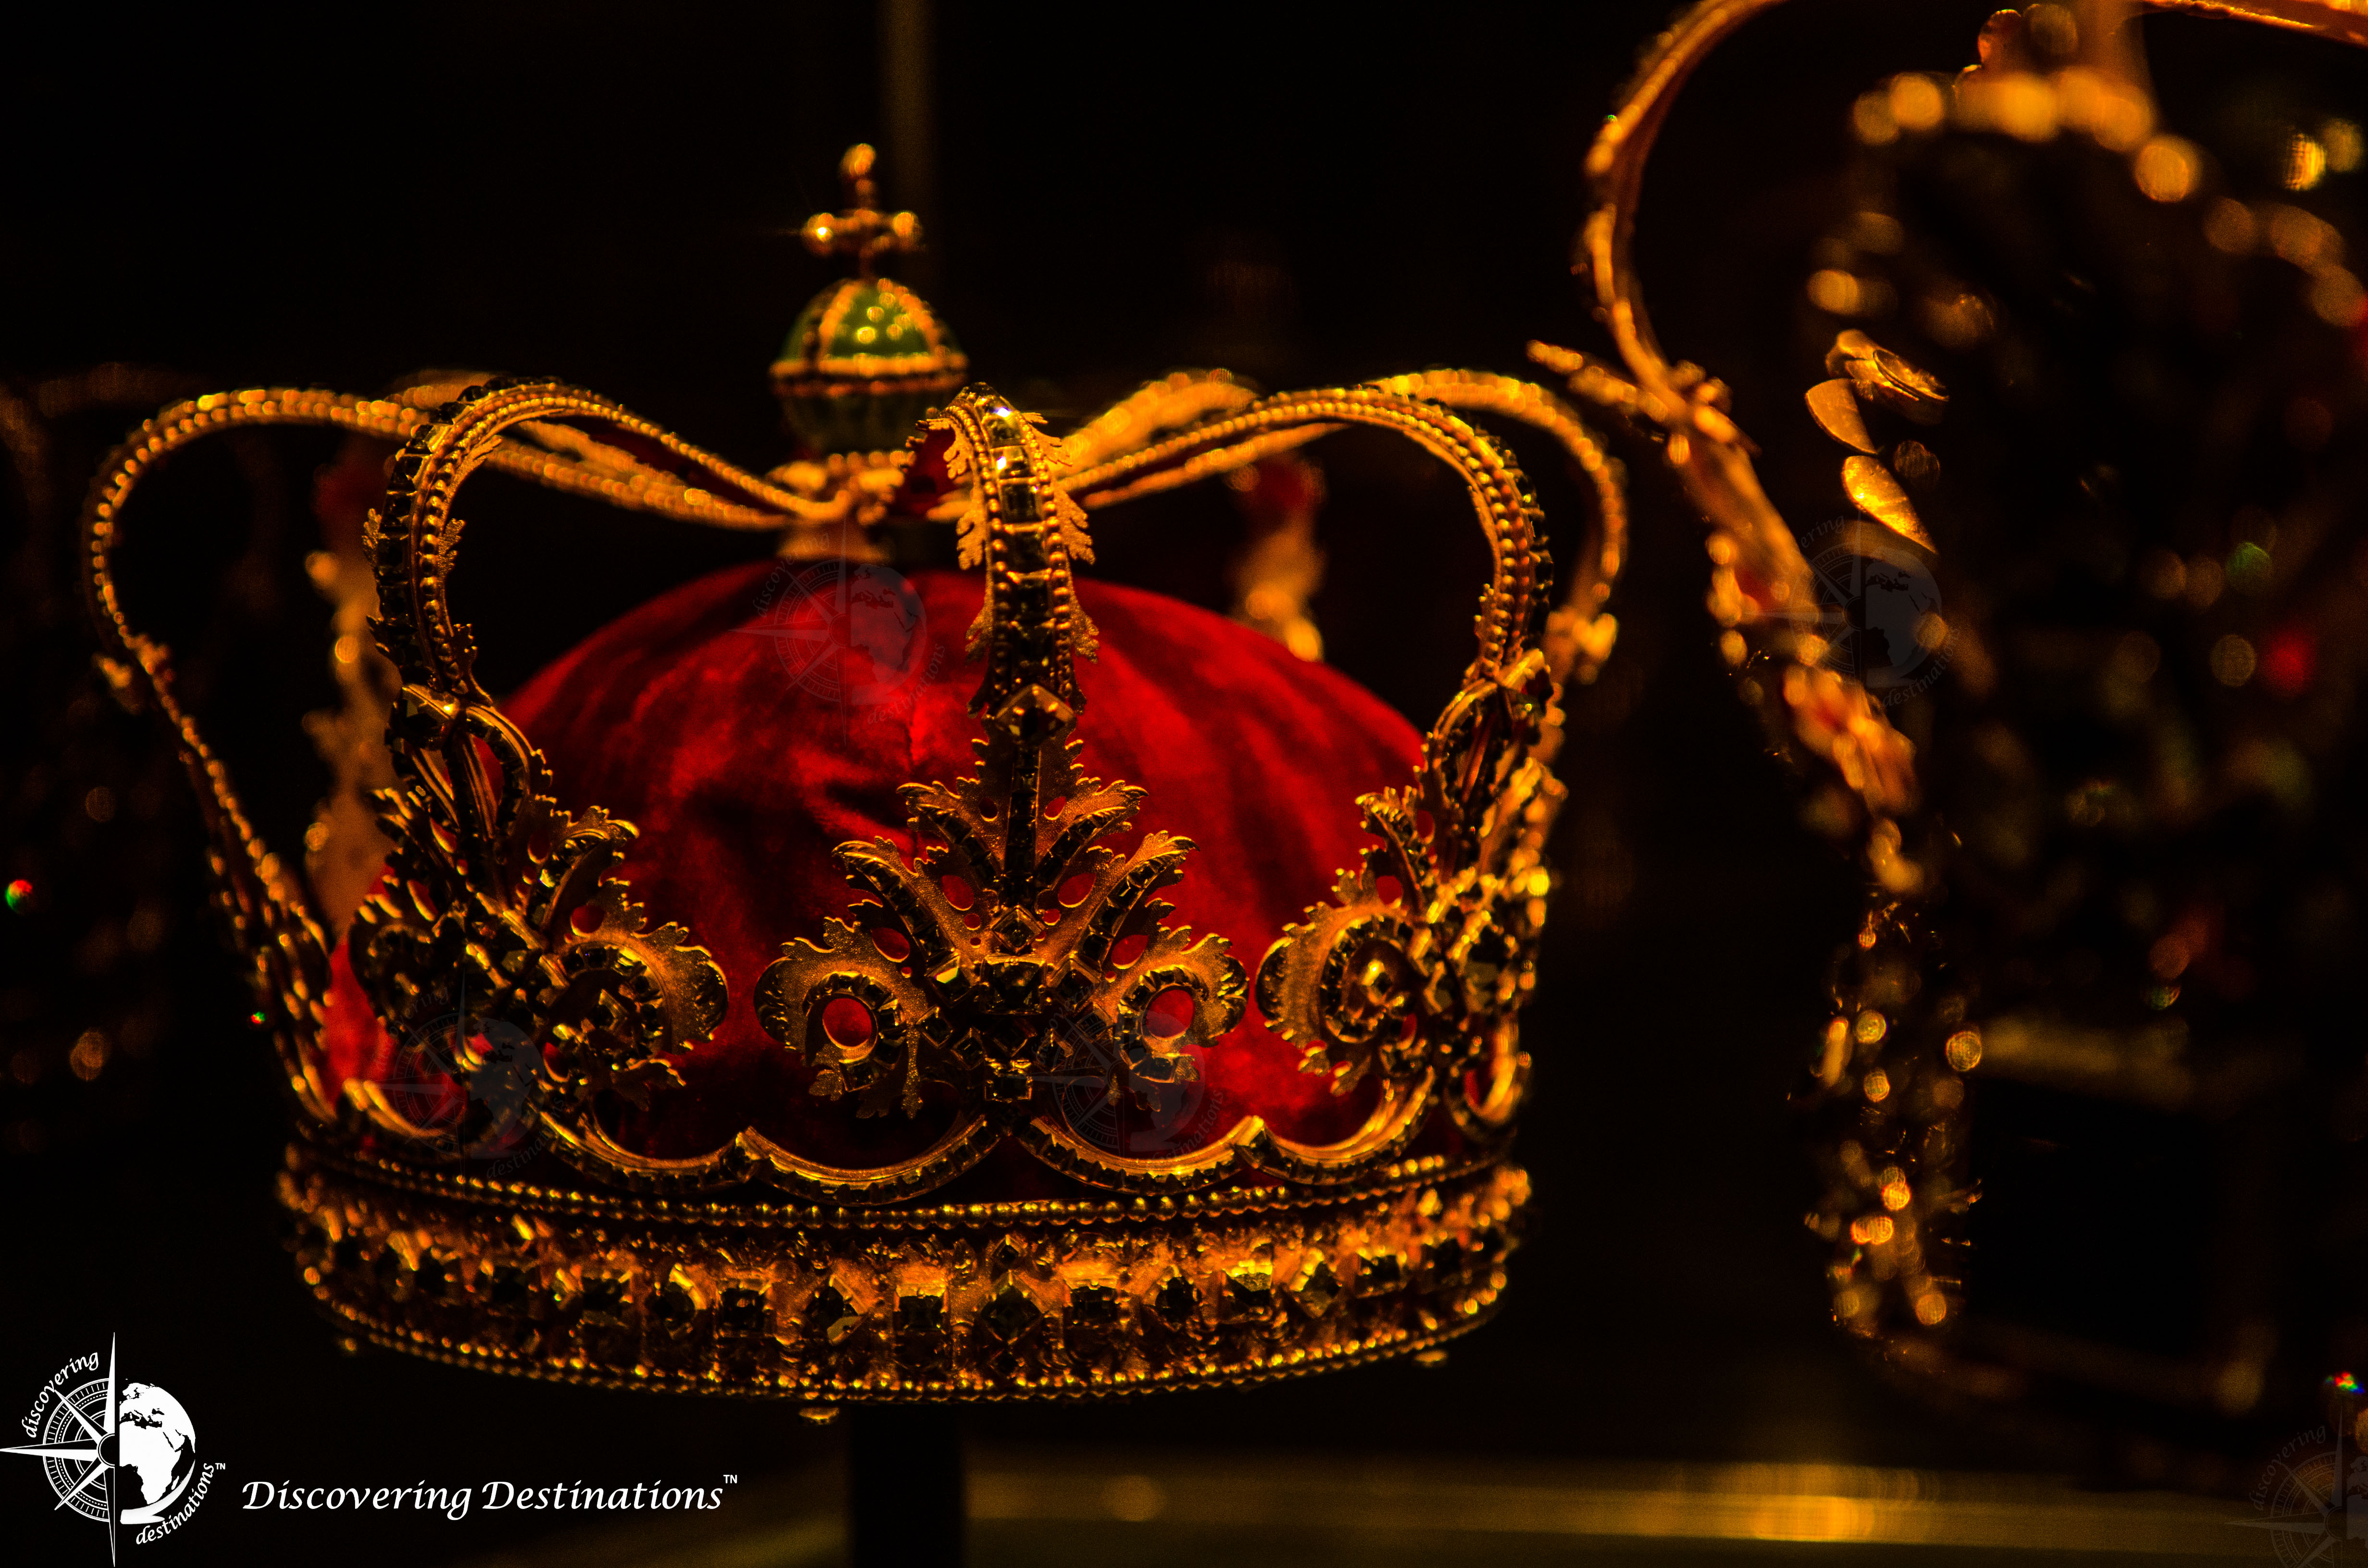 Rosenborg Crown